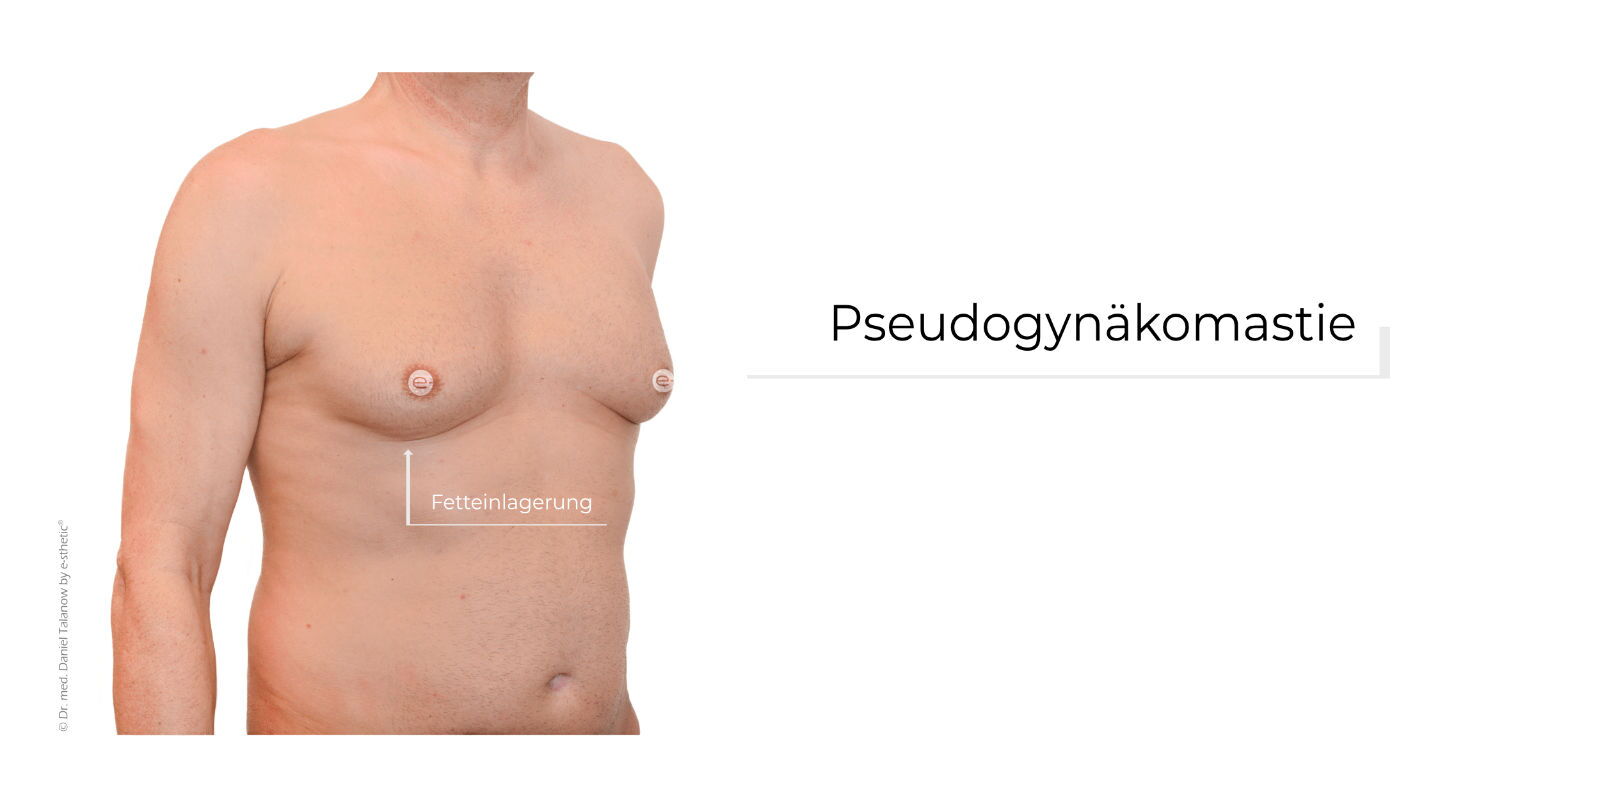 Eine Pseudogynäkomastie ist eine übermäßige Fettansammlung an der männlichen Brust